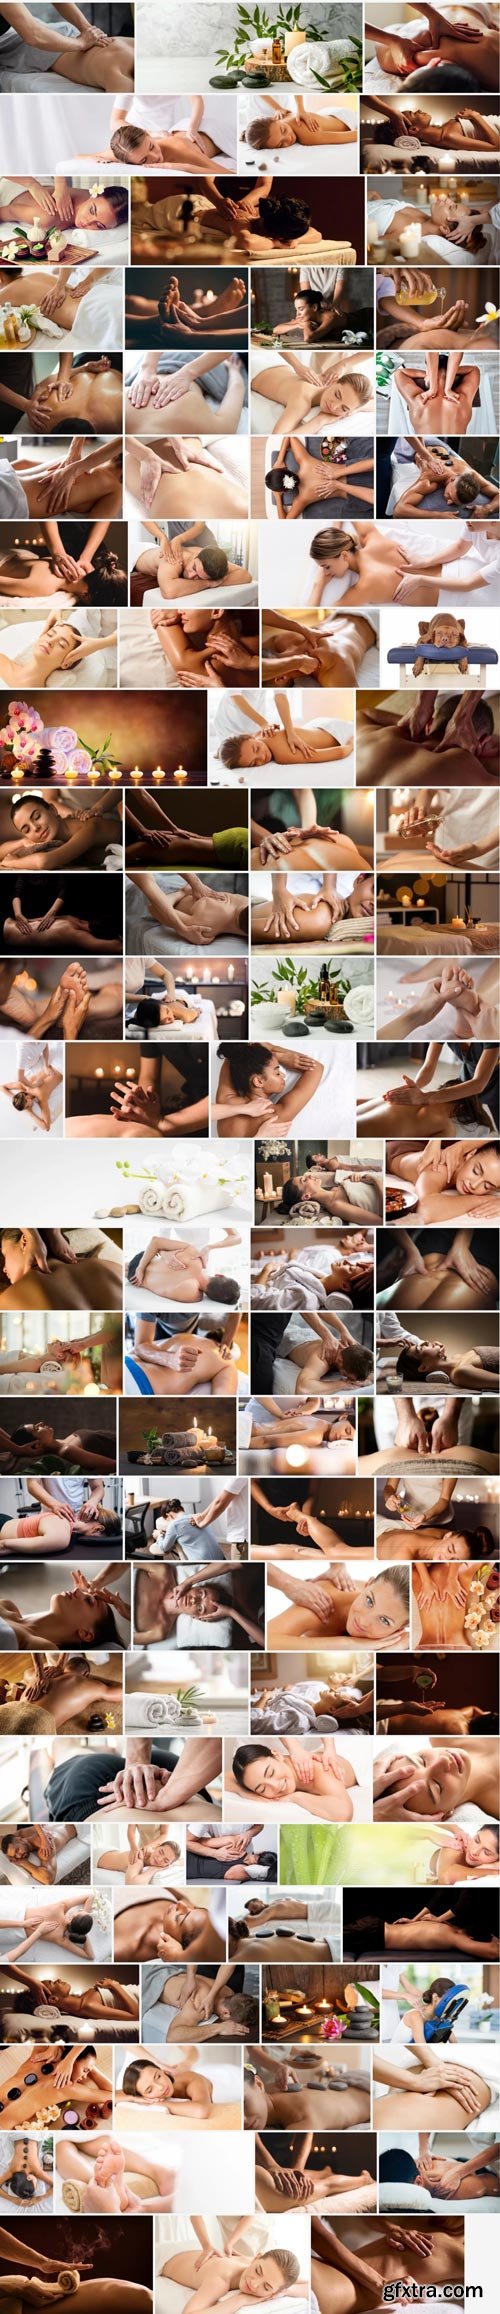 Amazing Photos, Massage 100xJPEG